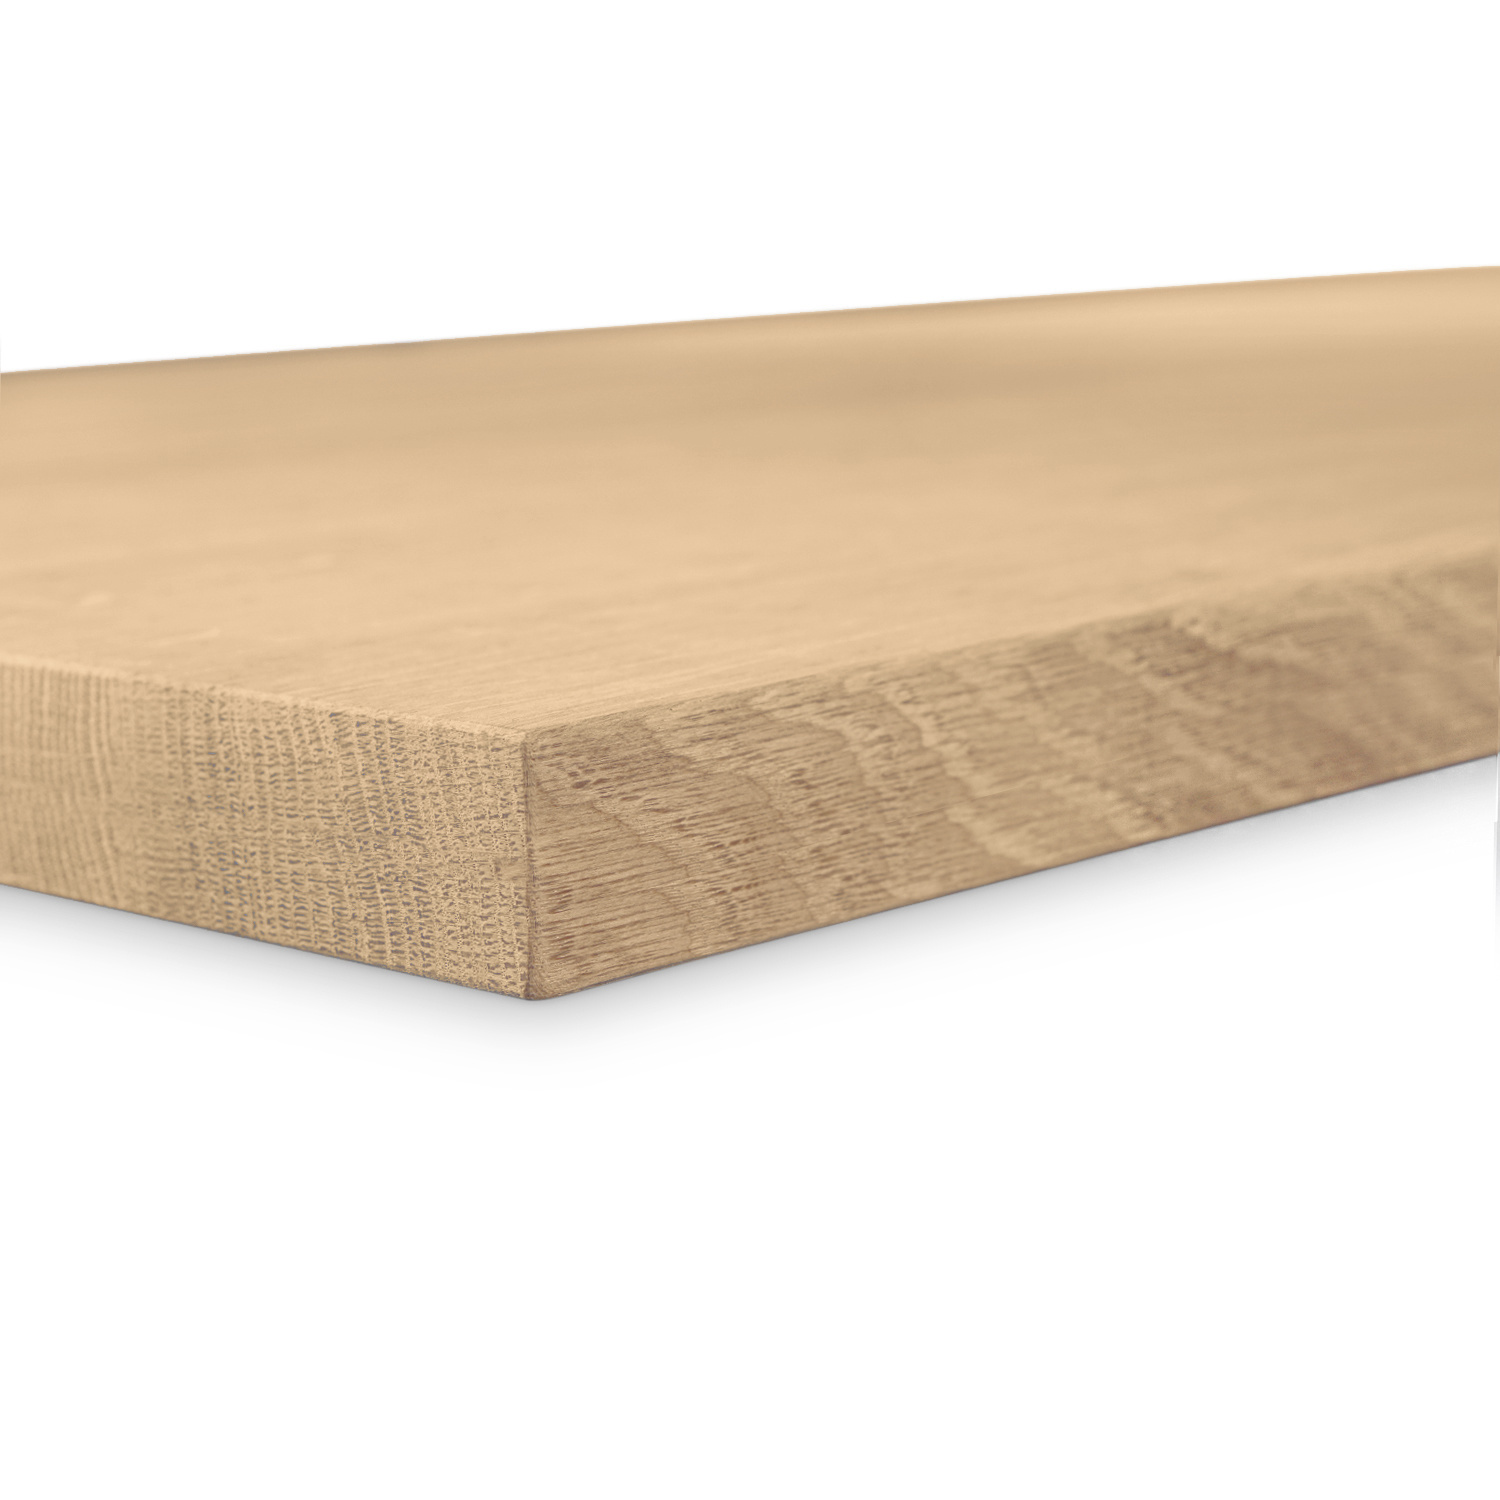  Tischplatte Eiche nach Maß - 4 cm dick (1-Schicht) - Breite Lamellen (10 - 12 cm breit) - Eichenholz A-Qualität - verleimt & künstlich getrocknet (HF 8-12%) - 50-120x50-248 cm